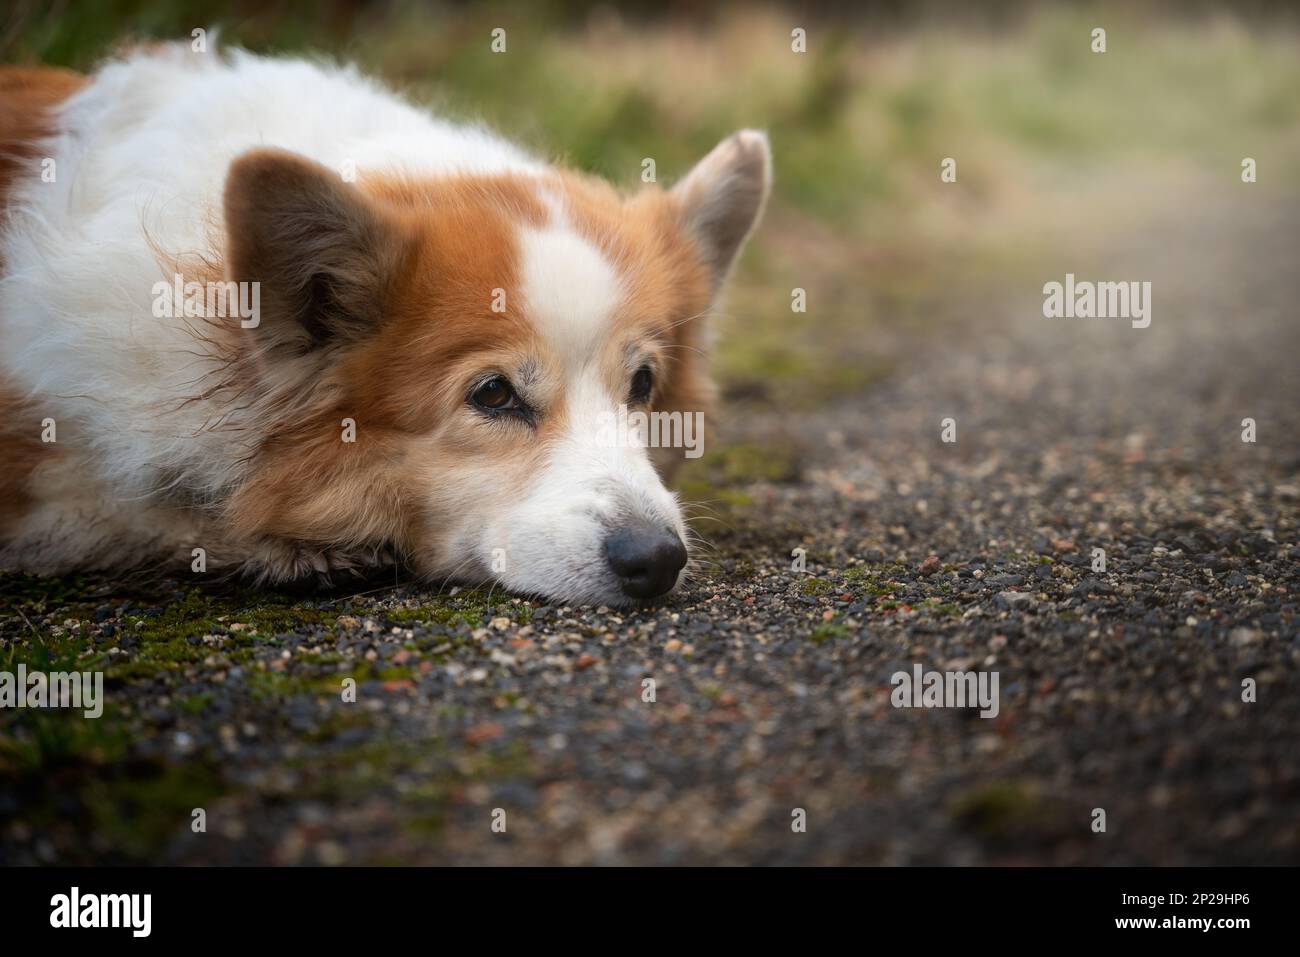 Un chien gallois Corgi Pembroke fatigué se trouve près de la voiture et repose. Chien fatigué après une longue randonnée Banque D'Images